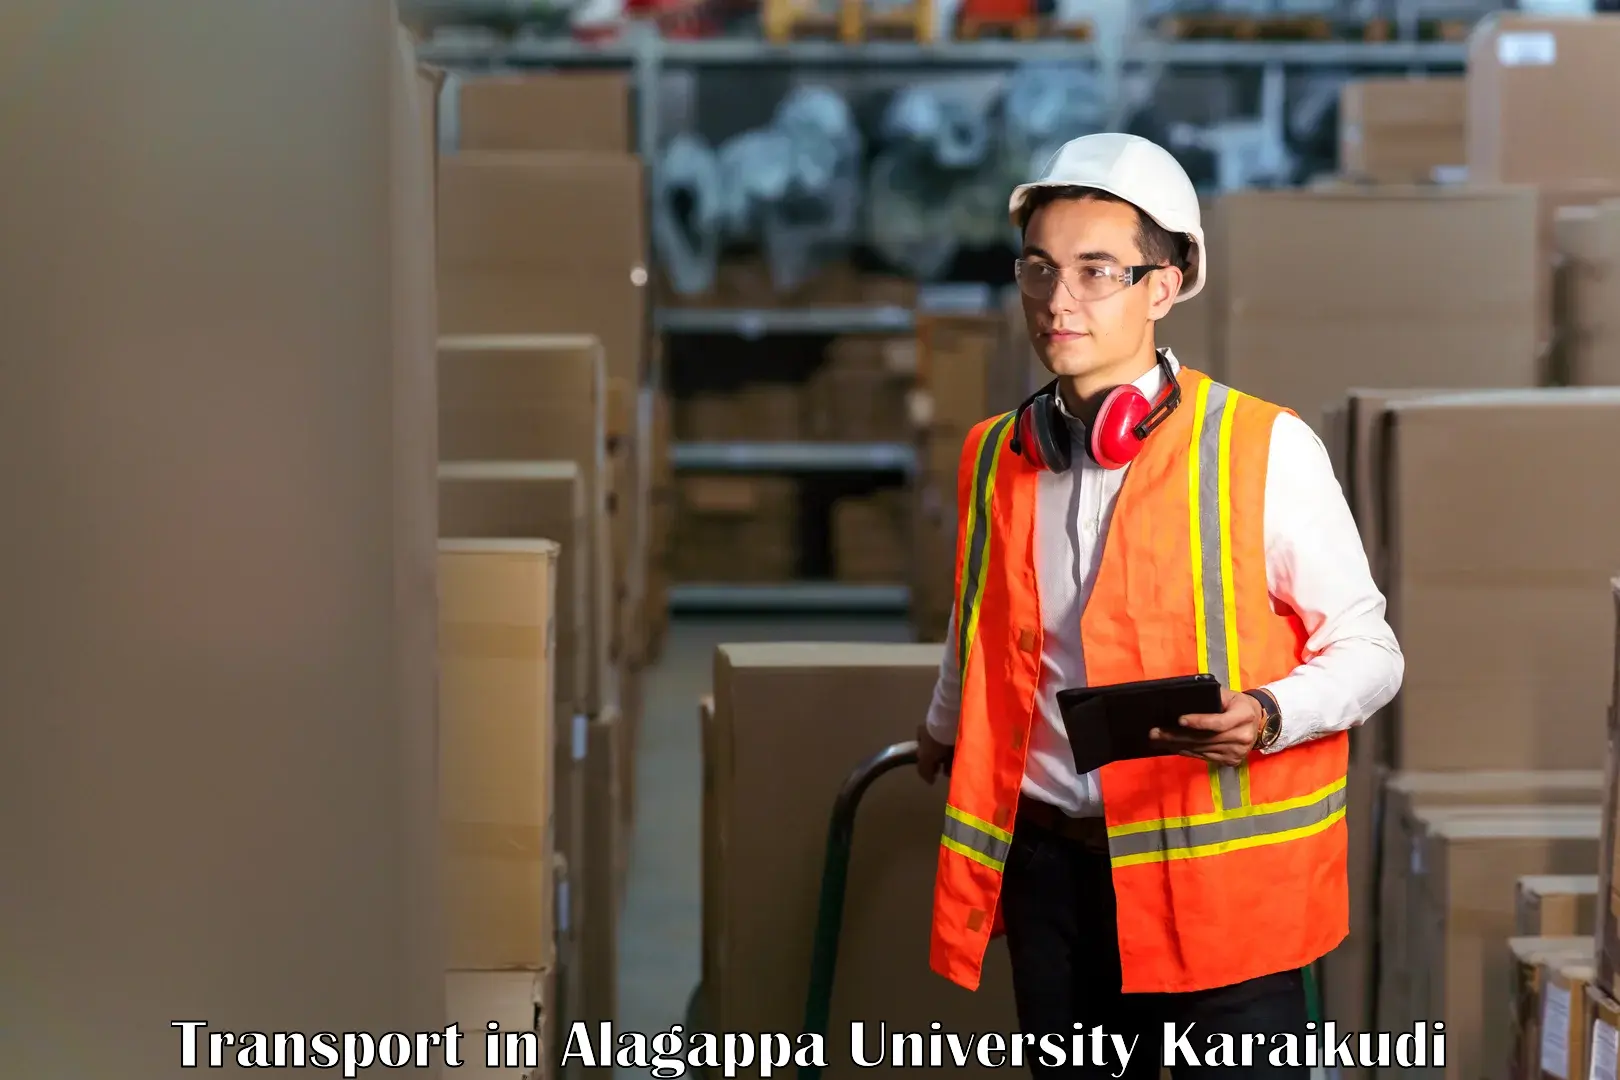 Goods delivery service in Alagappa University Karaikudi